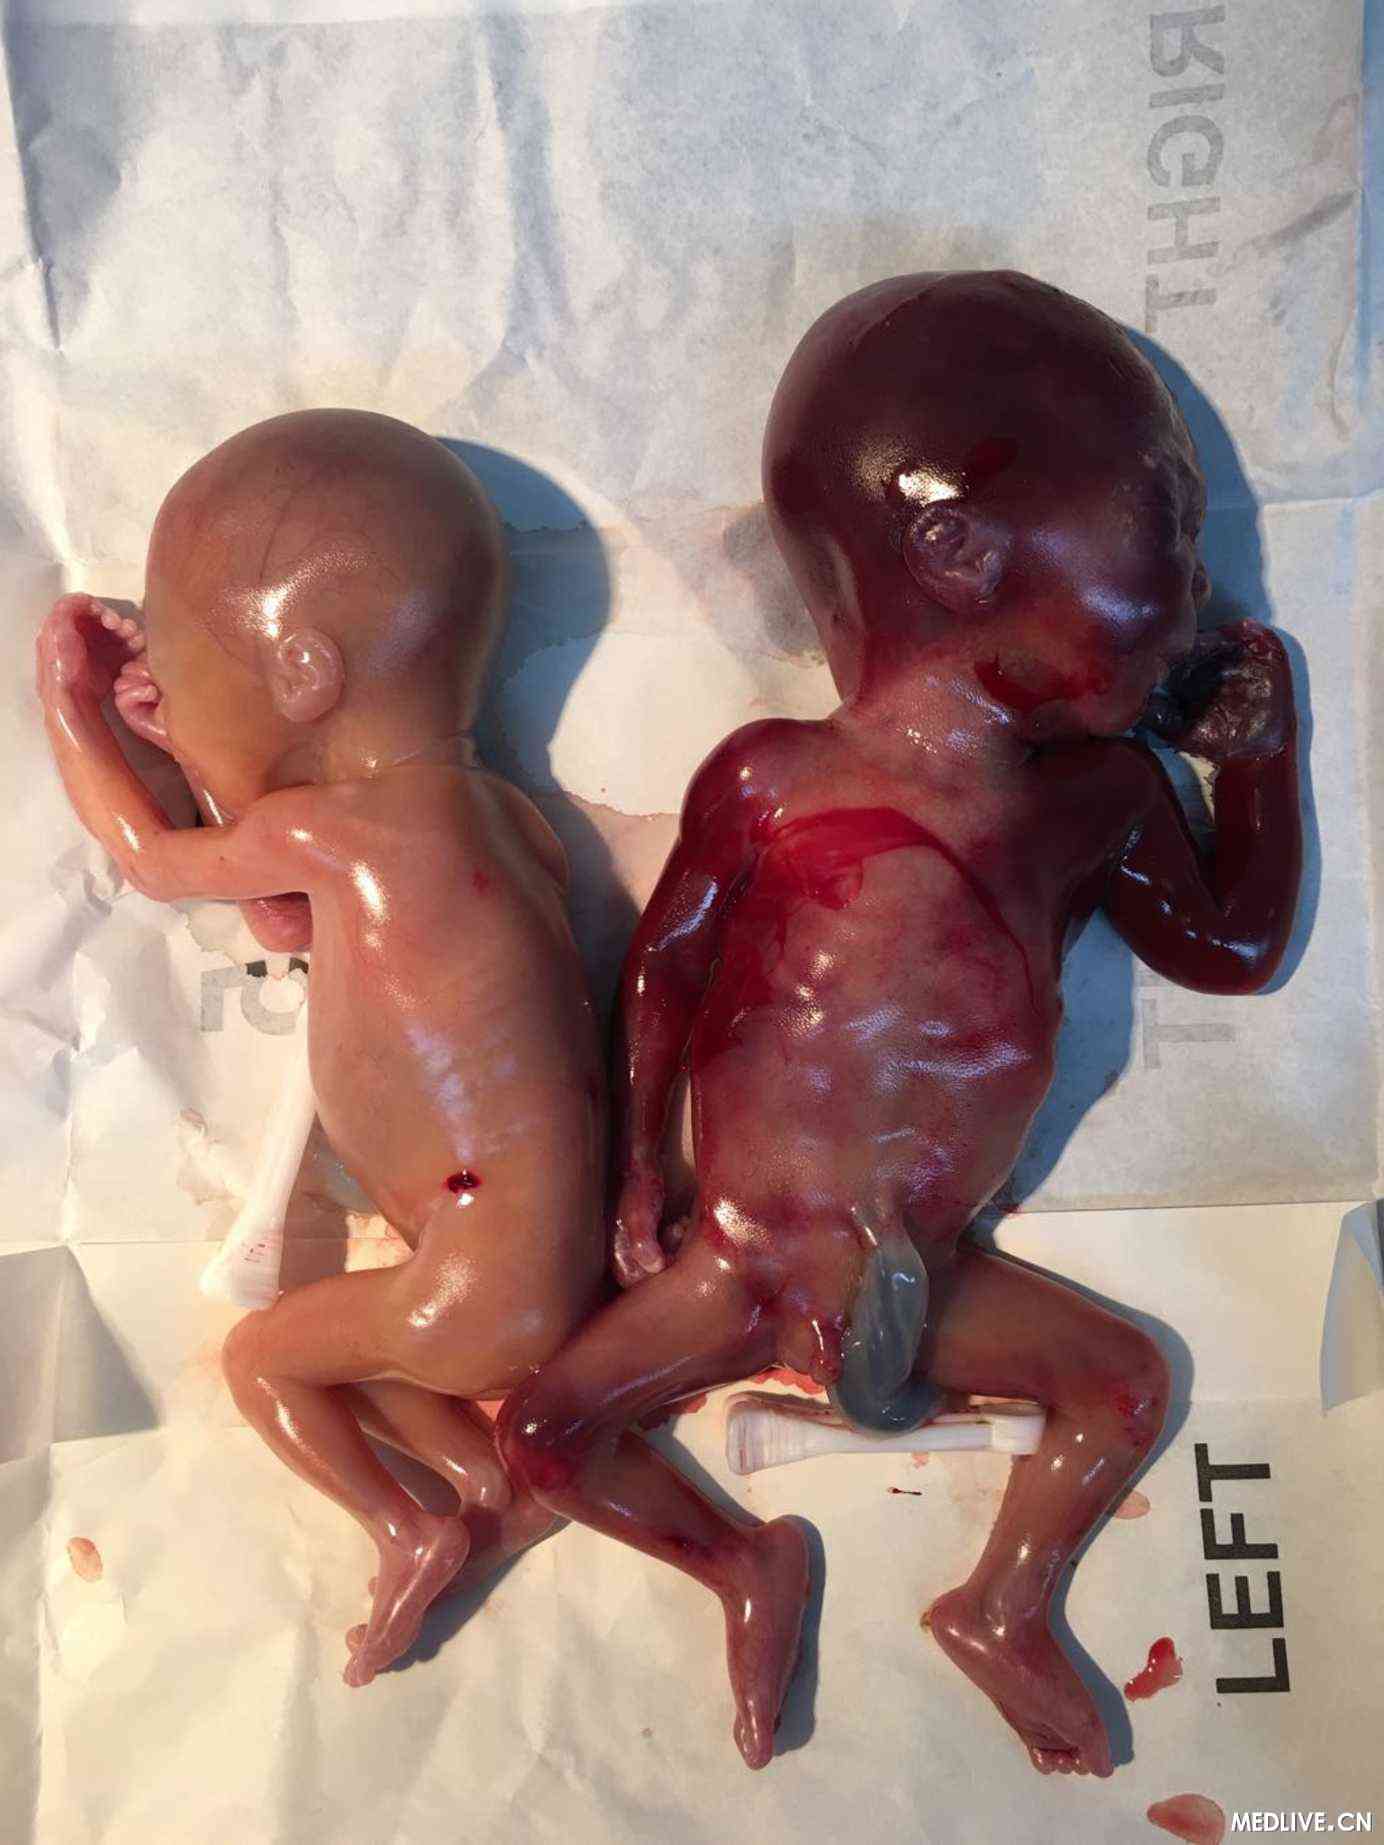 患儿,20周,aog,g4p3(3003),多胞胎妊娠,早产,孩子出生后没多久就死亡